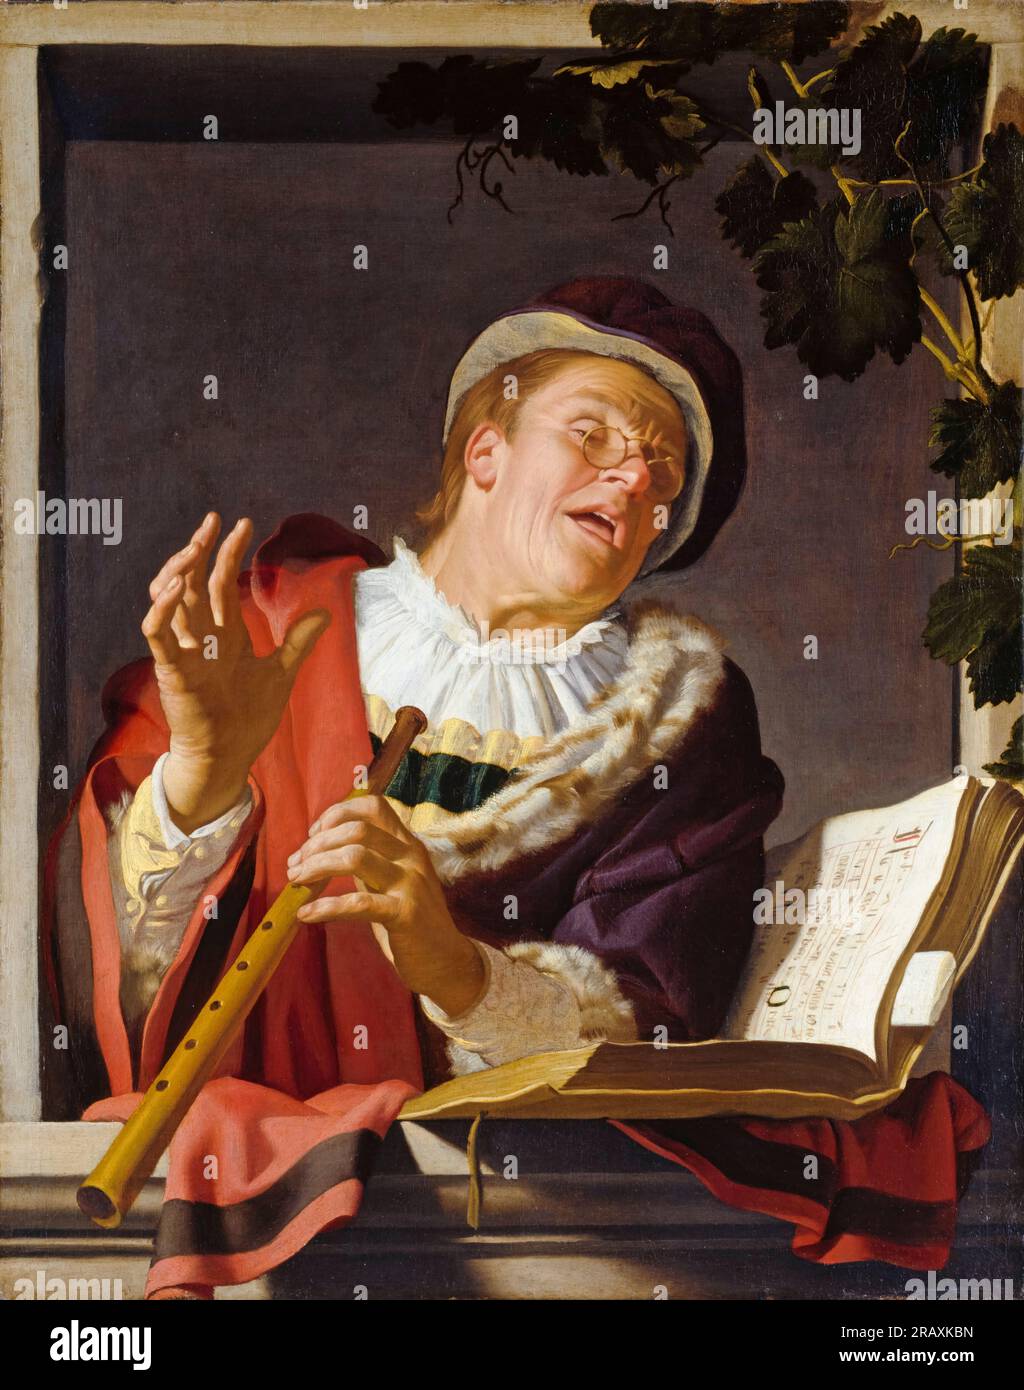 Gerard van Honthorst, flûtiste chantant, peinture à l'huile sur toile, vers 1623 Banque D'Images